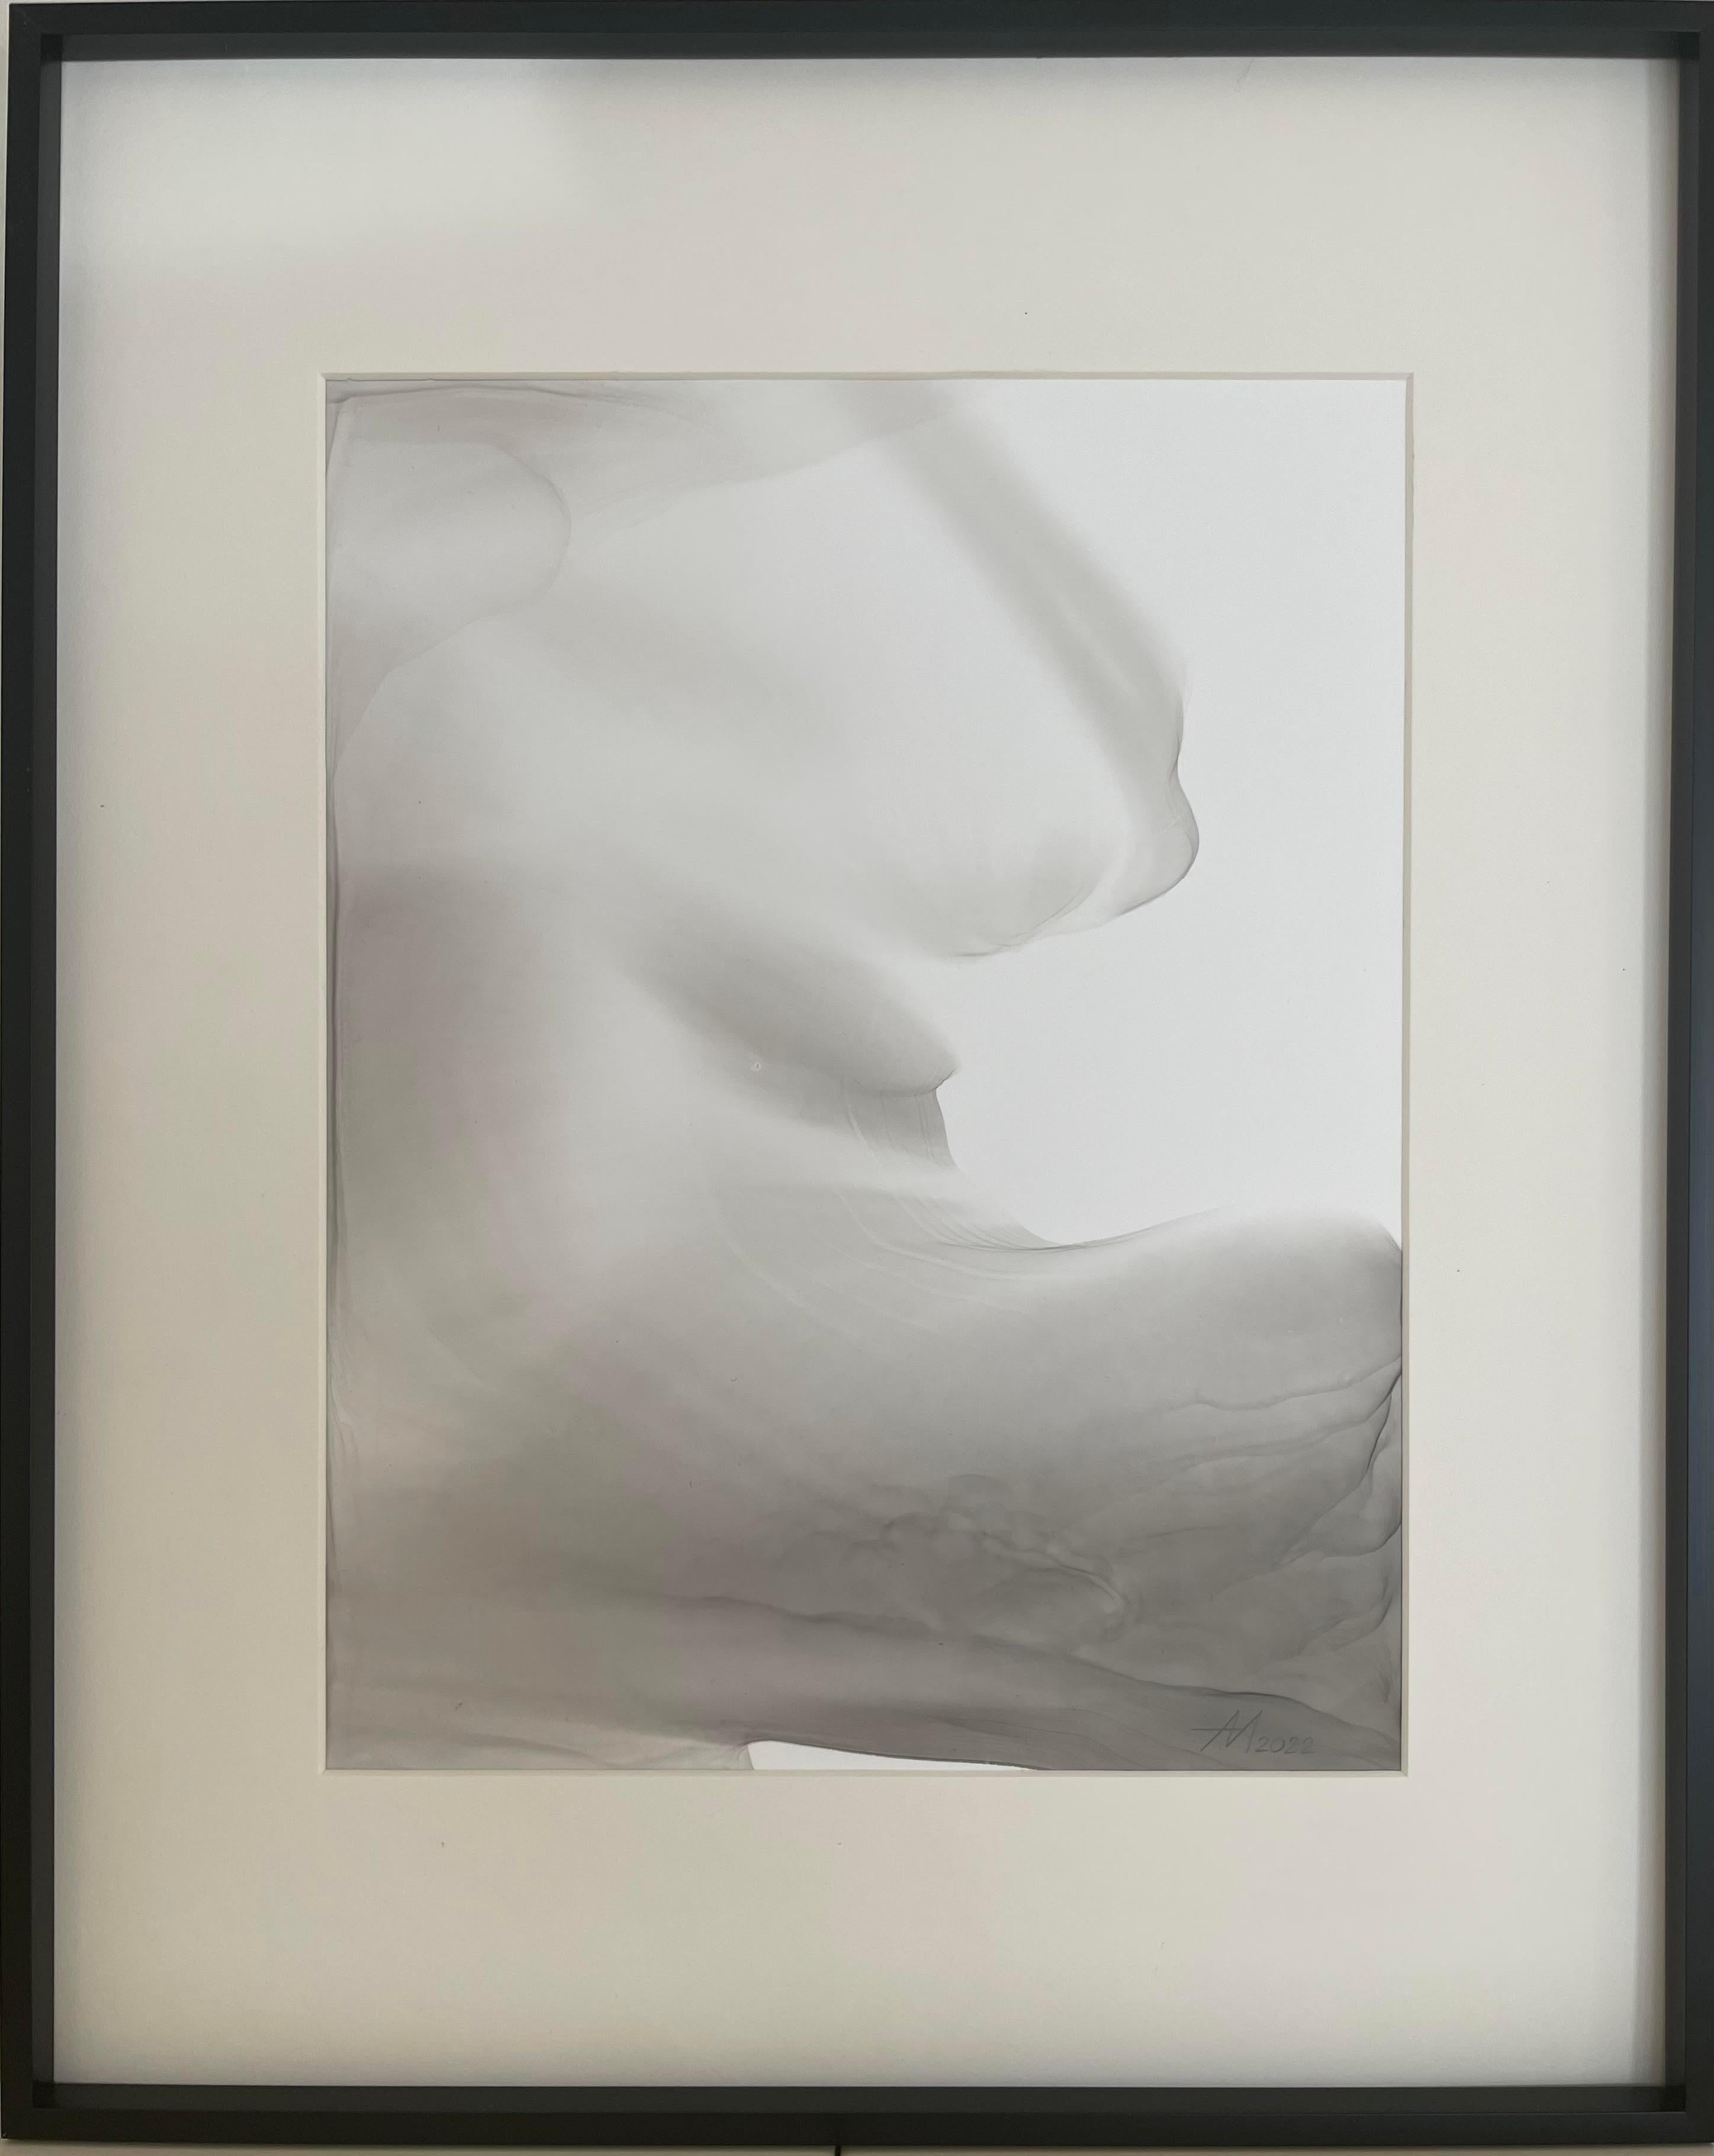 Mila Akopova Abstract Drawing – Wave - abstraktes Gemälde, in schwarzer, grauer Farbe gemalt